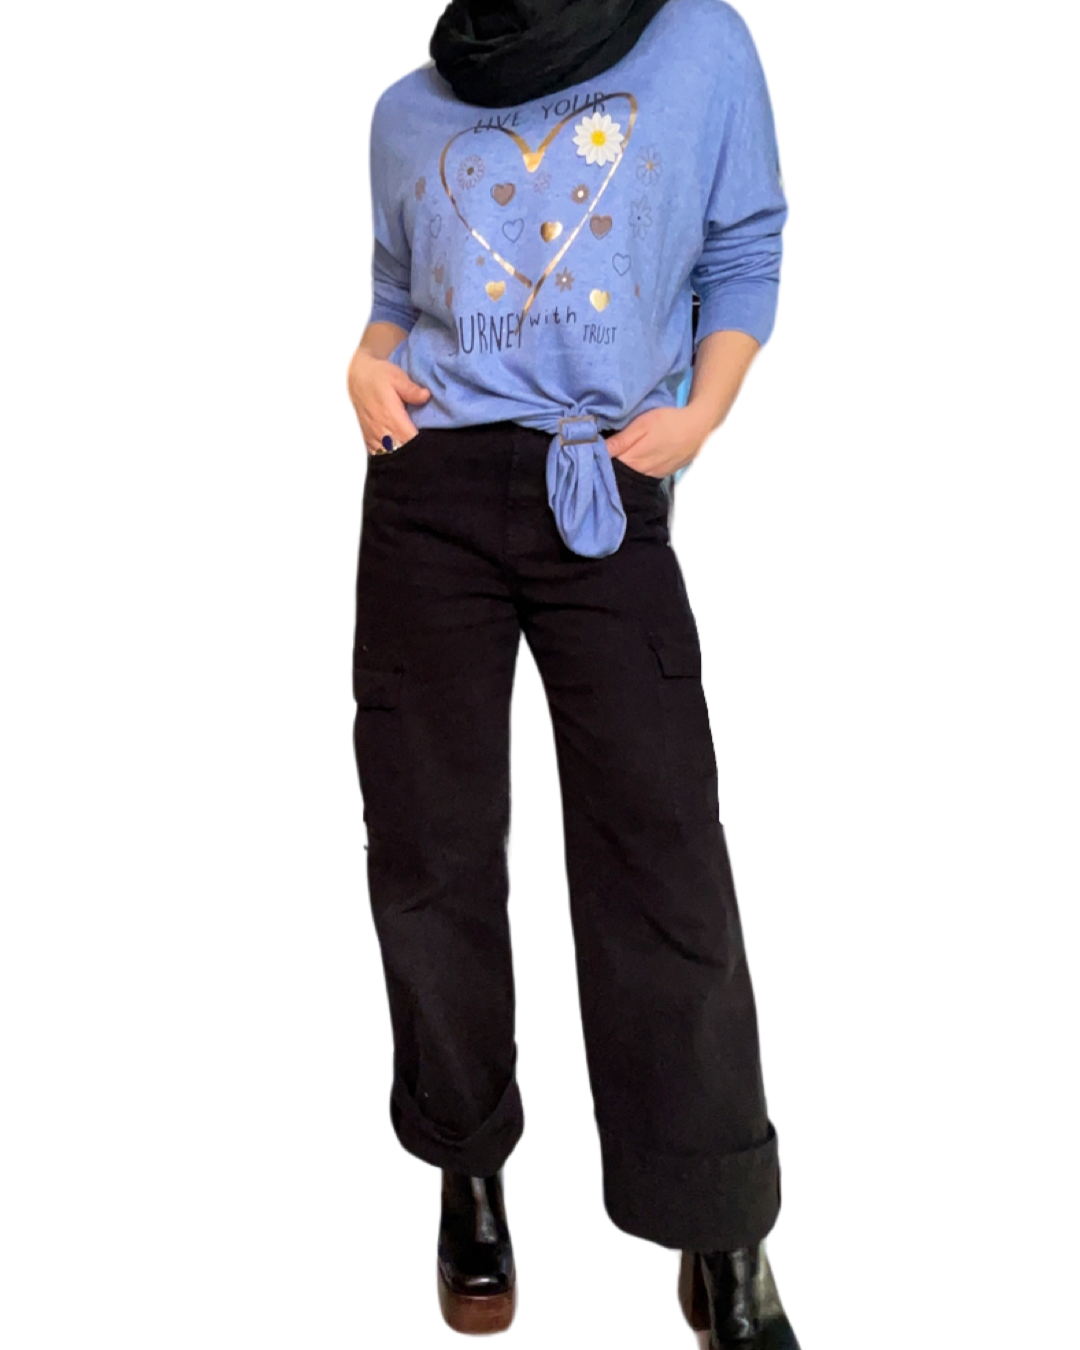 Chandail femme bleu lilas à manche longue avec imprimé de coeur doré avec jeans cargo noir et bottes noires.